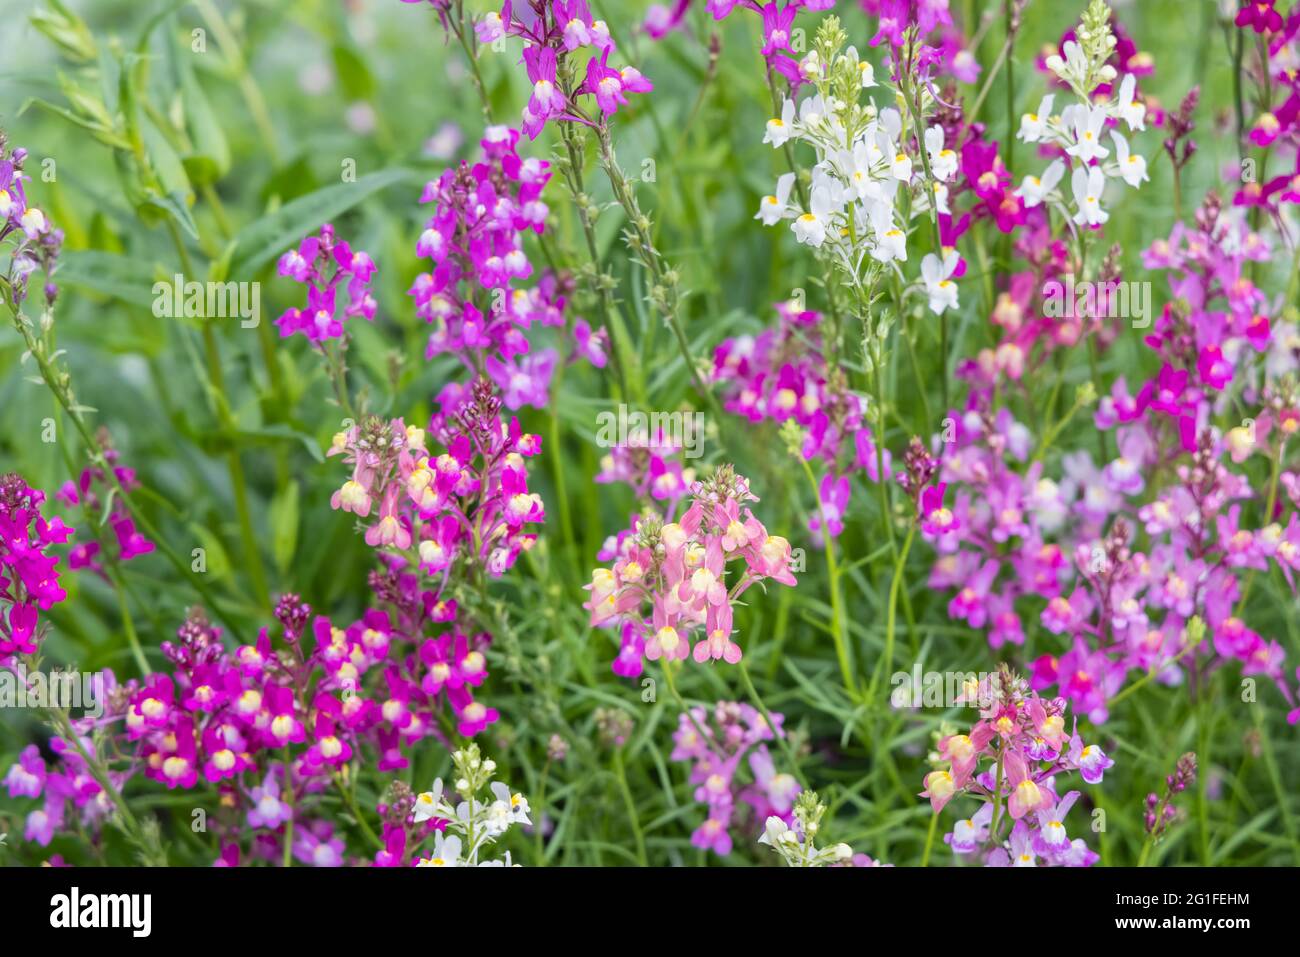 Gemischte Farben der jährlichen Einstreu-Pflanze Linaria maroccana, Linaria 'Northern Lights' blüht im späten Frühjahr bis zum Frühsommer in einem Garten in Surrey Stockfoto